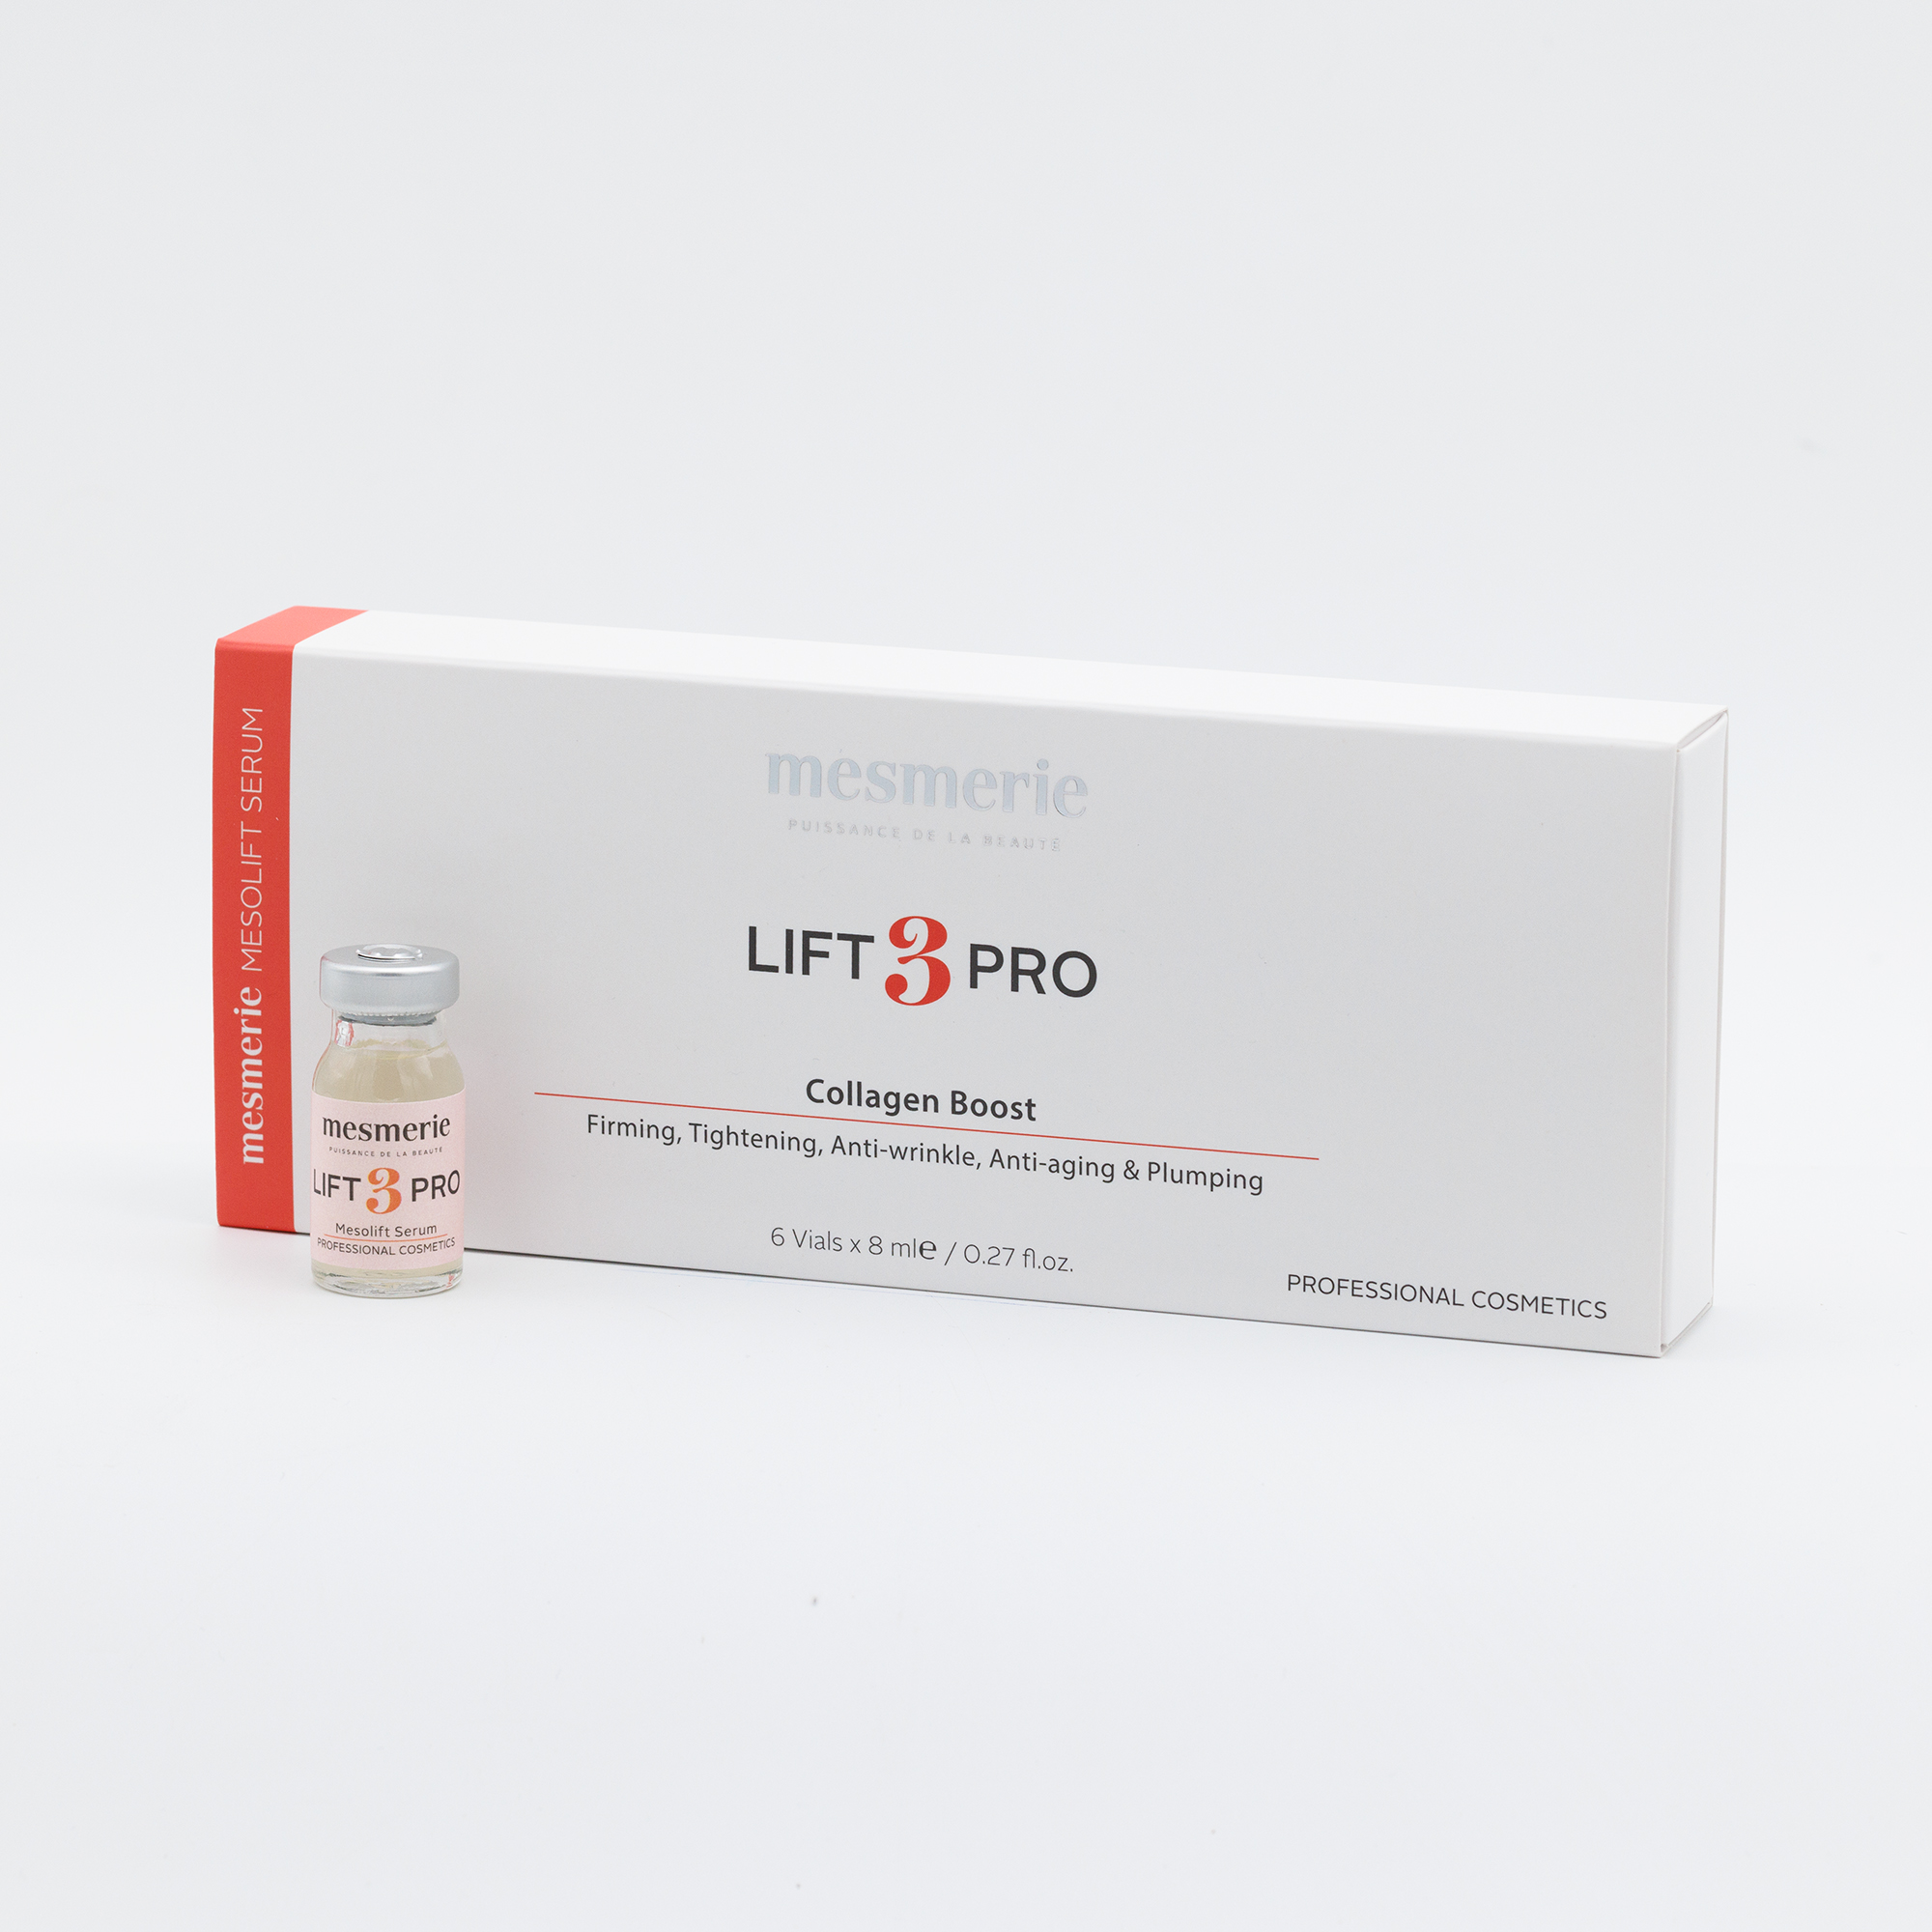 LIFT 3 PRO ampula serum za lifting efekat 8ml